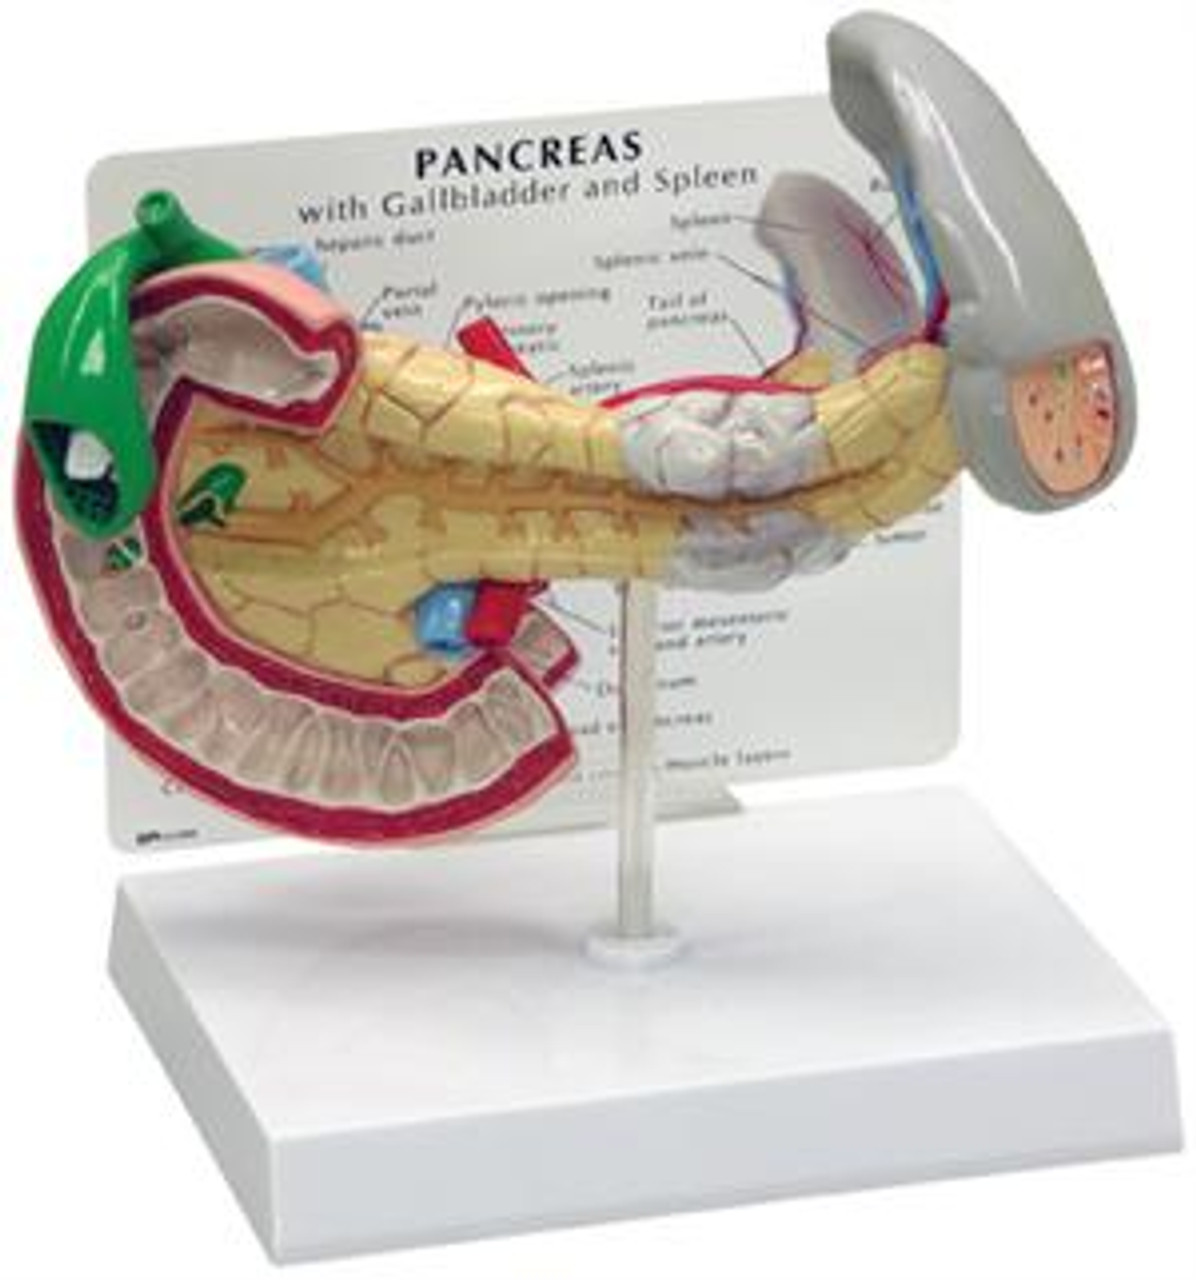 Pancreas/Gallbladder/Spleen cancer model